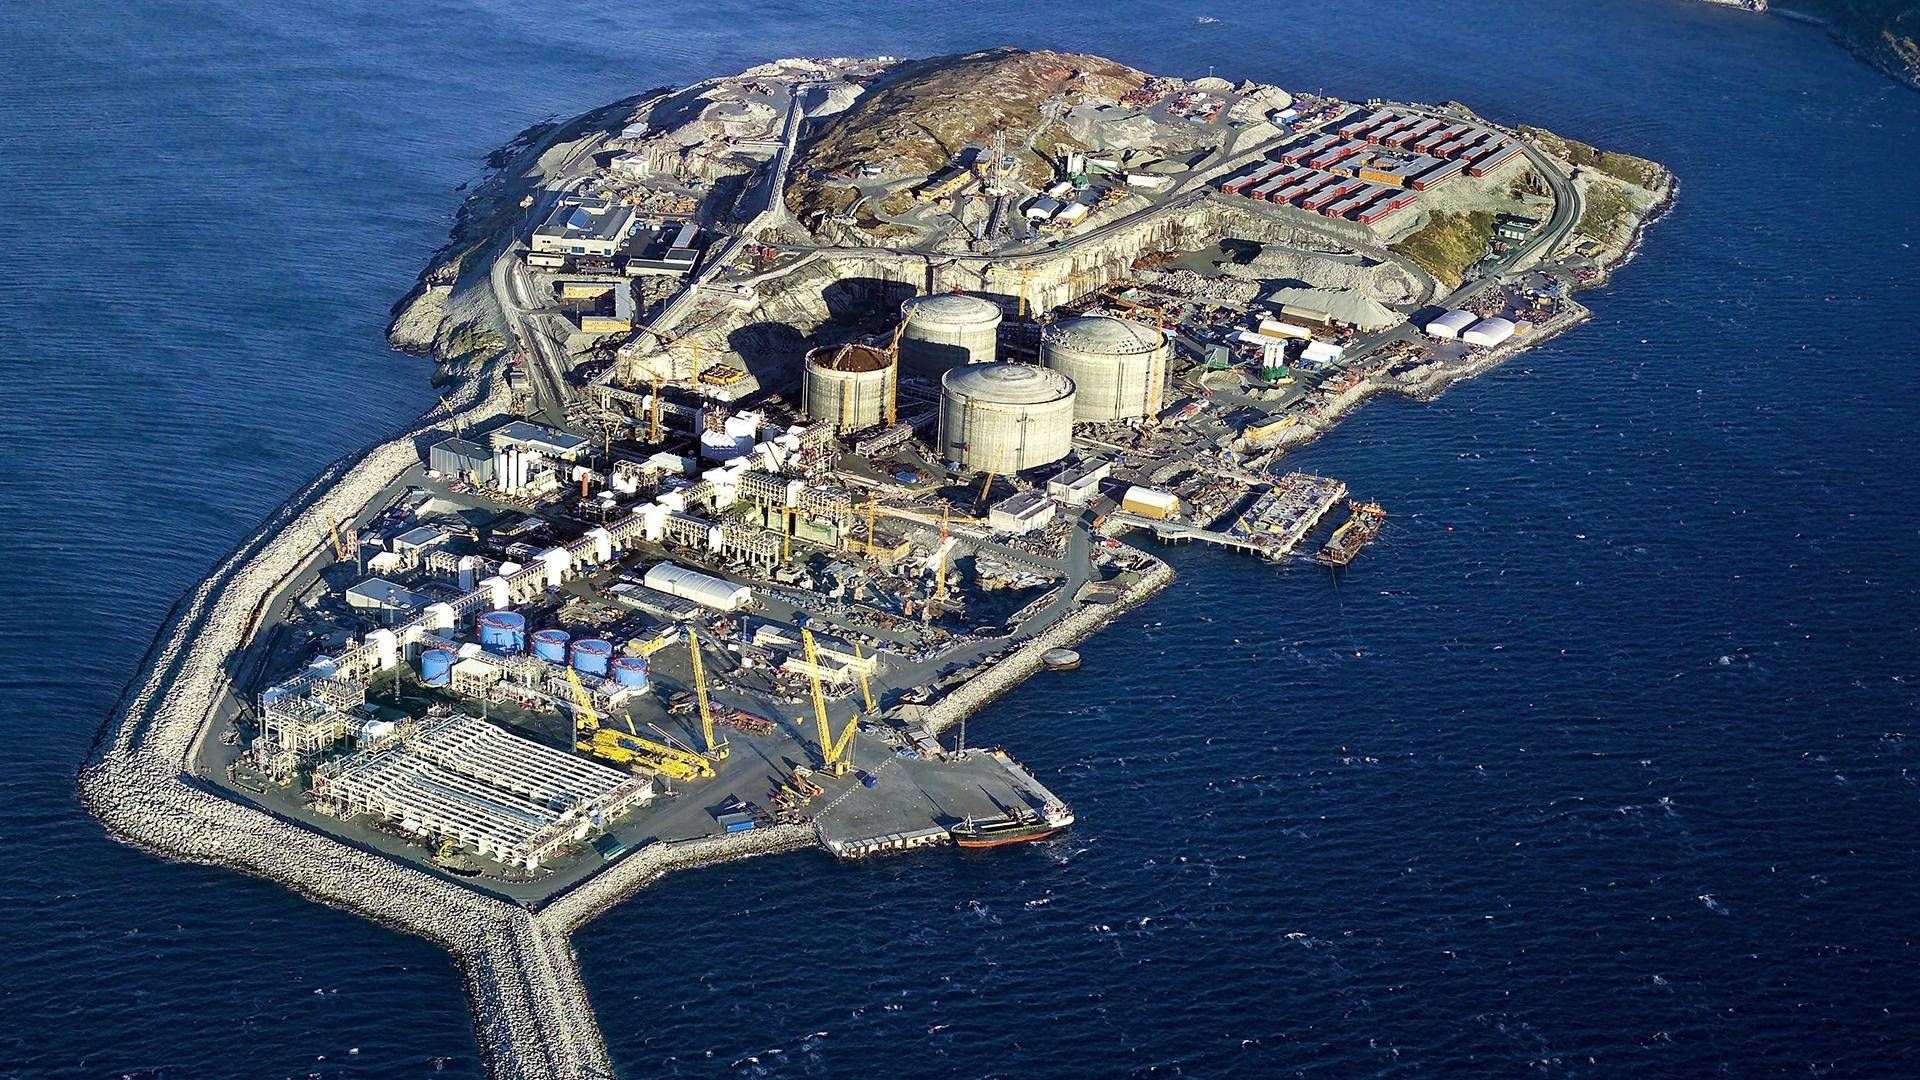 De økonomiske tab ved branden på Melkøya kendes ikke, men alene tabte gasindtægter anslås til 20 milliarder norske kroner. | Photo: Norsk Petroleum